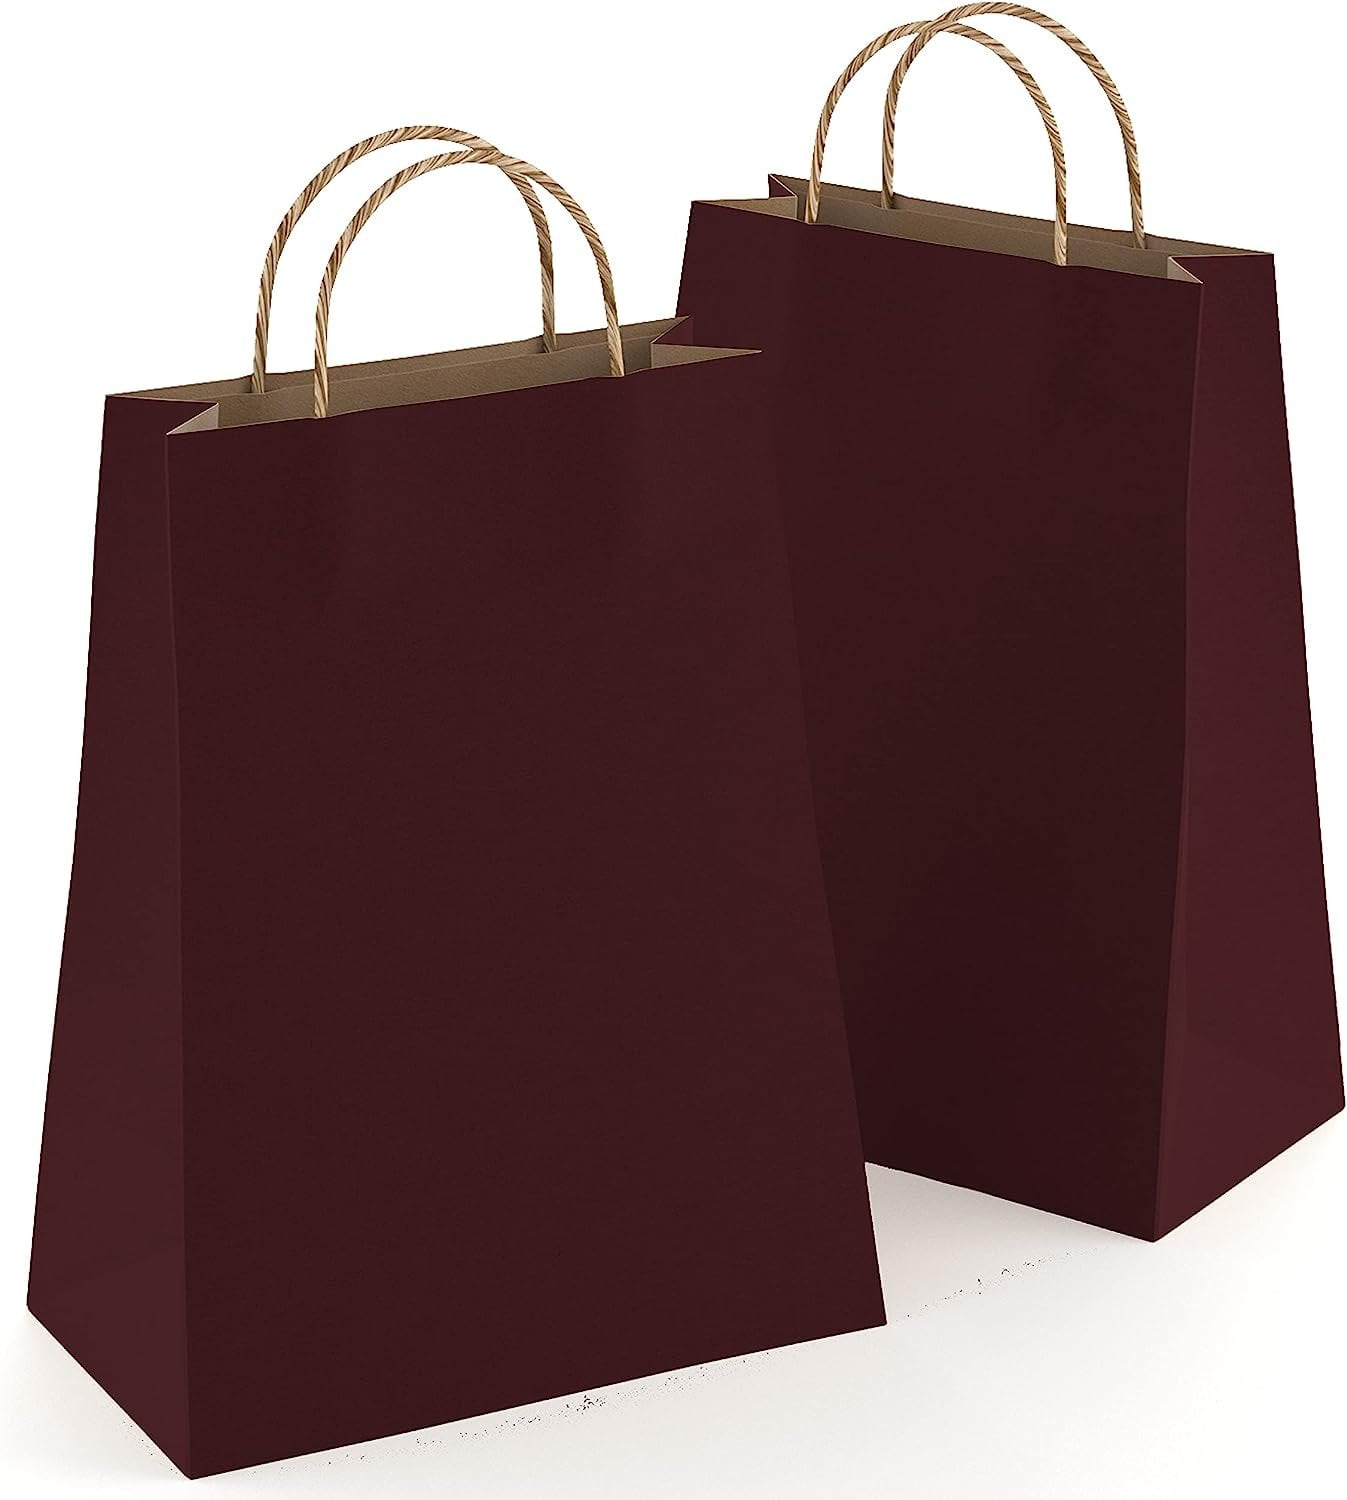 Duro Bag 4# Kraft Brown Paper Bags (500ct.) - Sam's Club